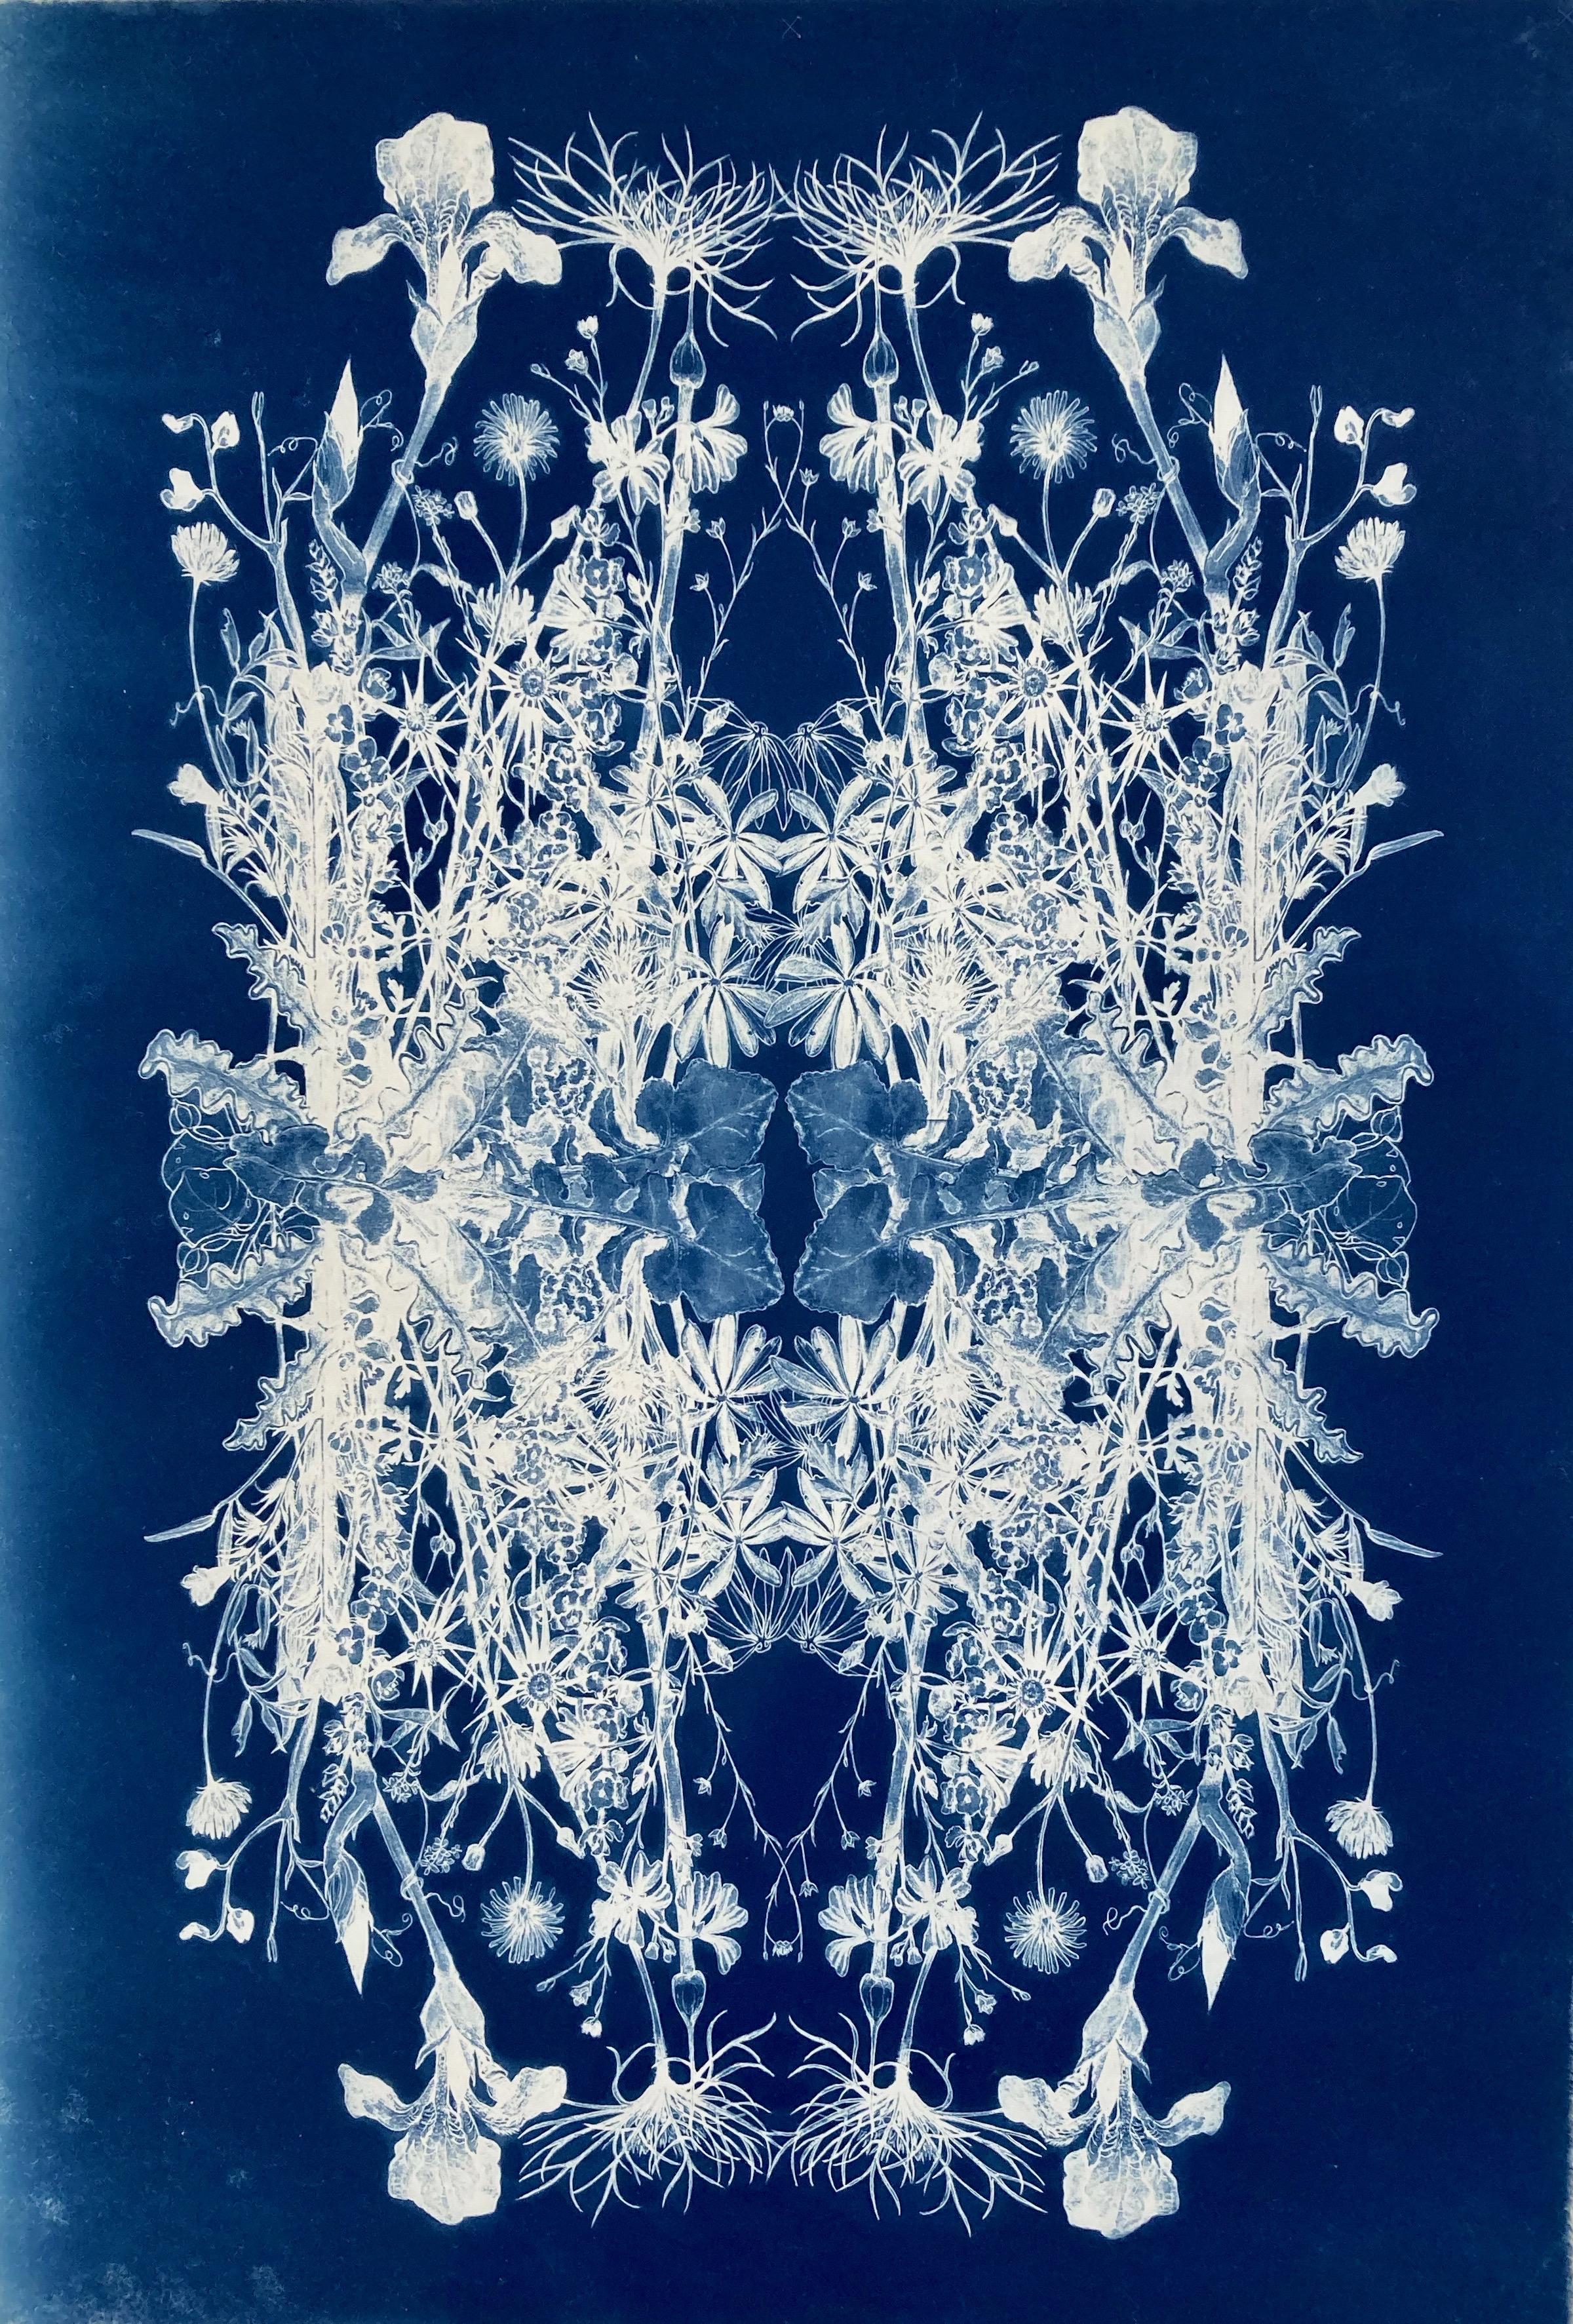 Botanische Rhapsodie".   Realistisches/abstraktes Blumenmuster Fotografie Blau/Weiß  